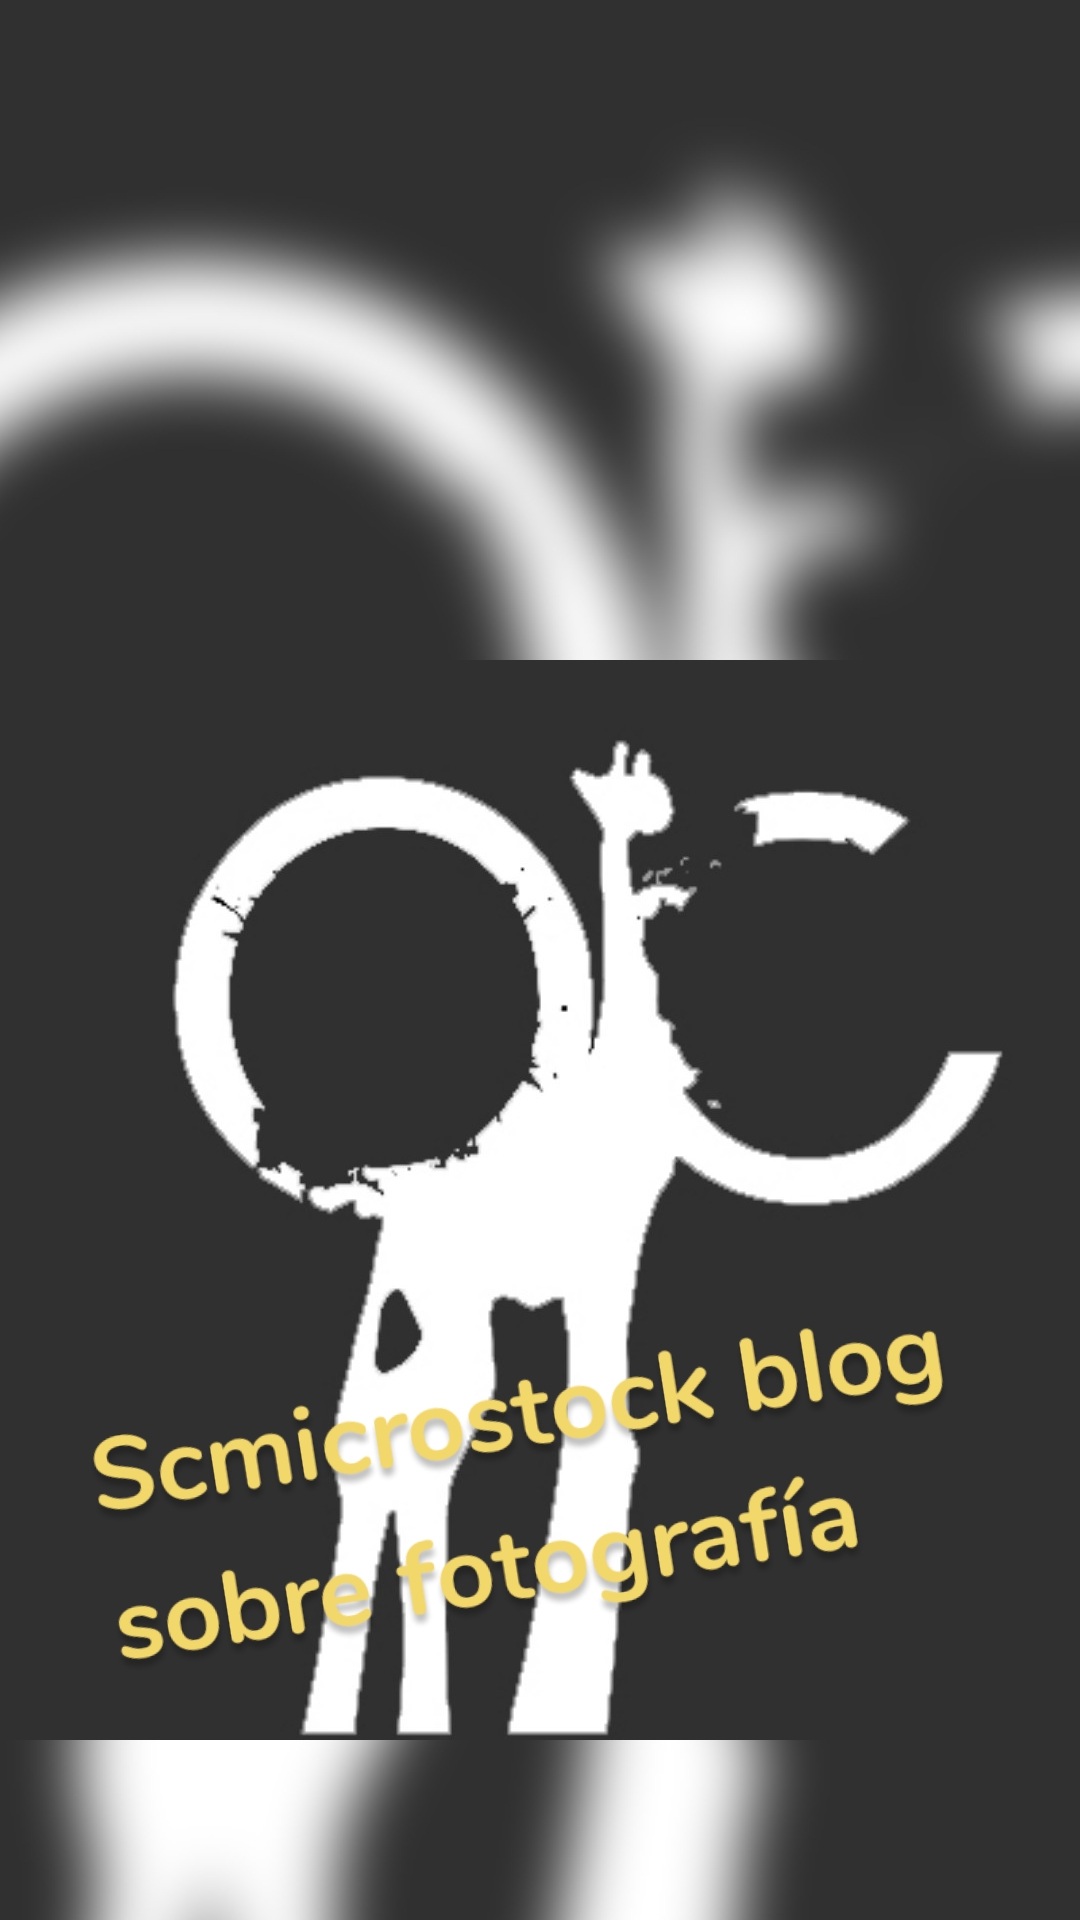 Scmicrostock blog 
sobre fotografía